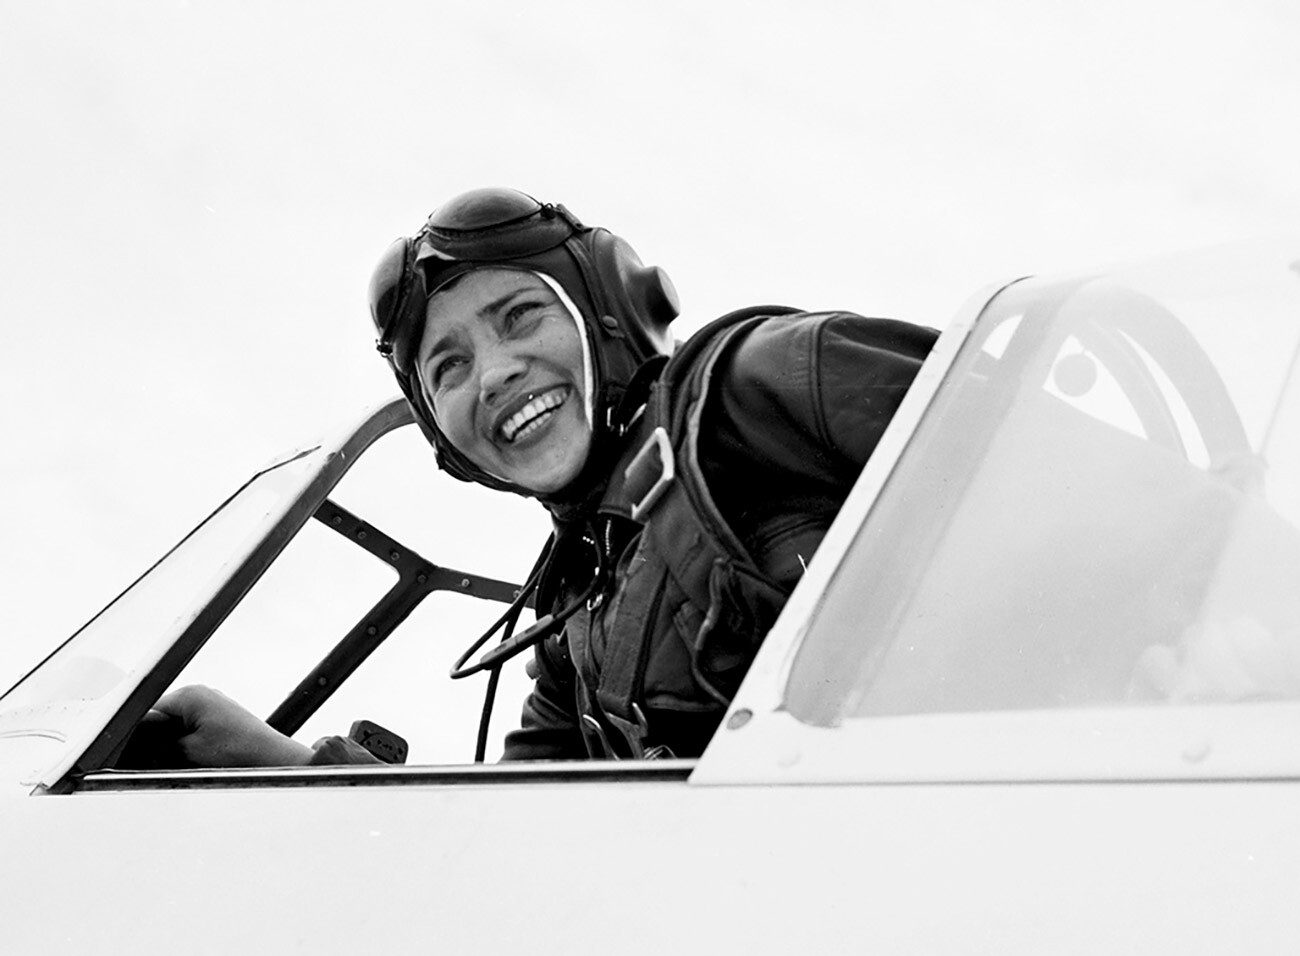 Testna pilotka 1.razreda, dobitnica 102 letalskih svetovnih rekordov v propelerskih in reaktivnih letalih ter helikopterjih, od tega 10 na težkem letalu AN-22 Antey (edina ženska, ki je pilotirala supertežko letalo)